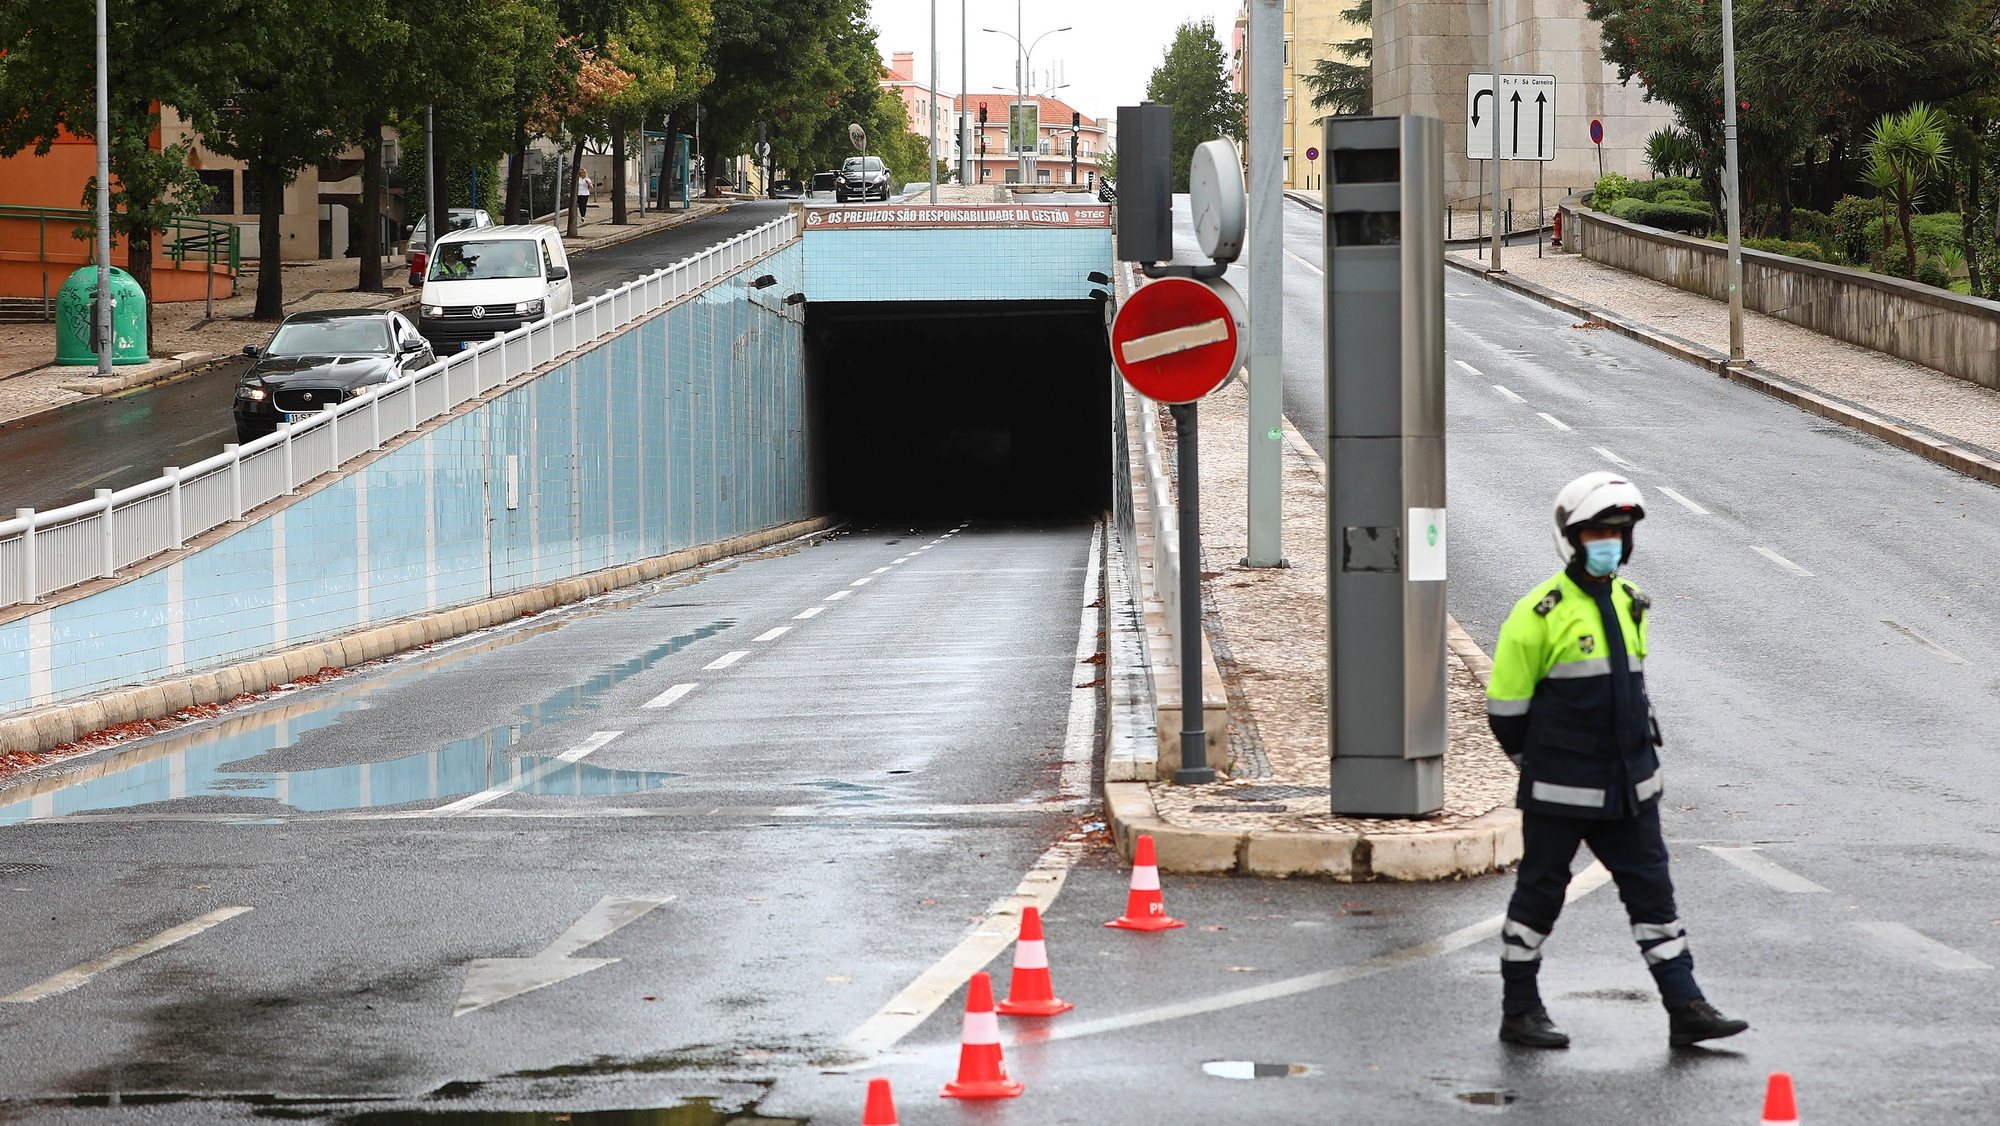 Um agente da Polícia Municipal controla o trânsito à entrada do túnel da Avenida João XXI, após um incêndio provocado por um curto-circuito, em Lisboa, 18 de setembro de 2020. ANTÓNIO PEDRO SANTOS/LUSA